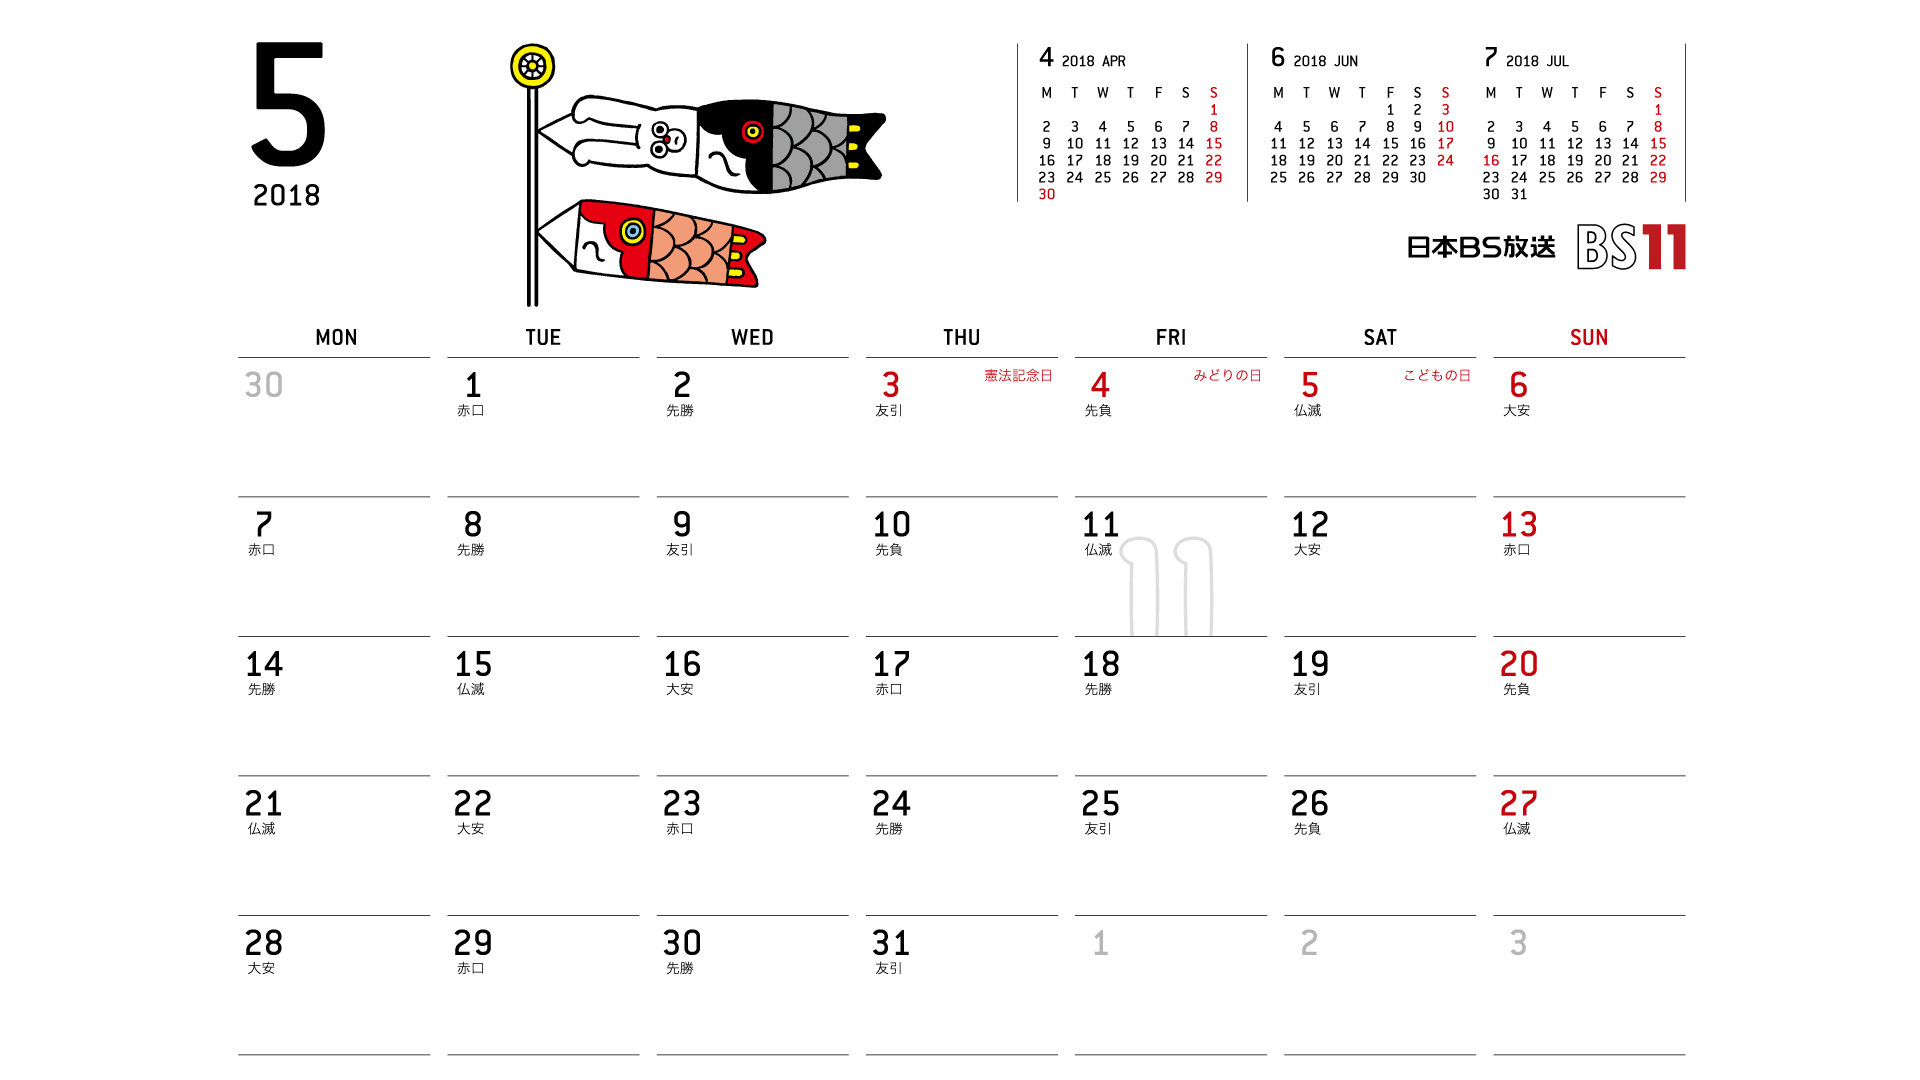 じゅういっちゃんのデジタルカレンダー18年05月 Bs11 イレブン いつでも無料放送